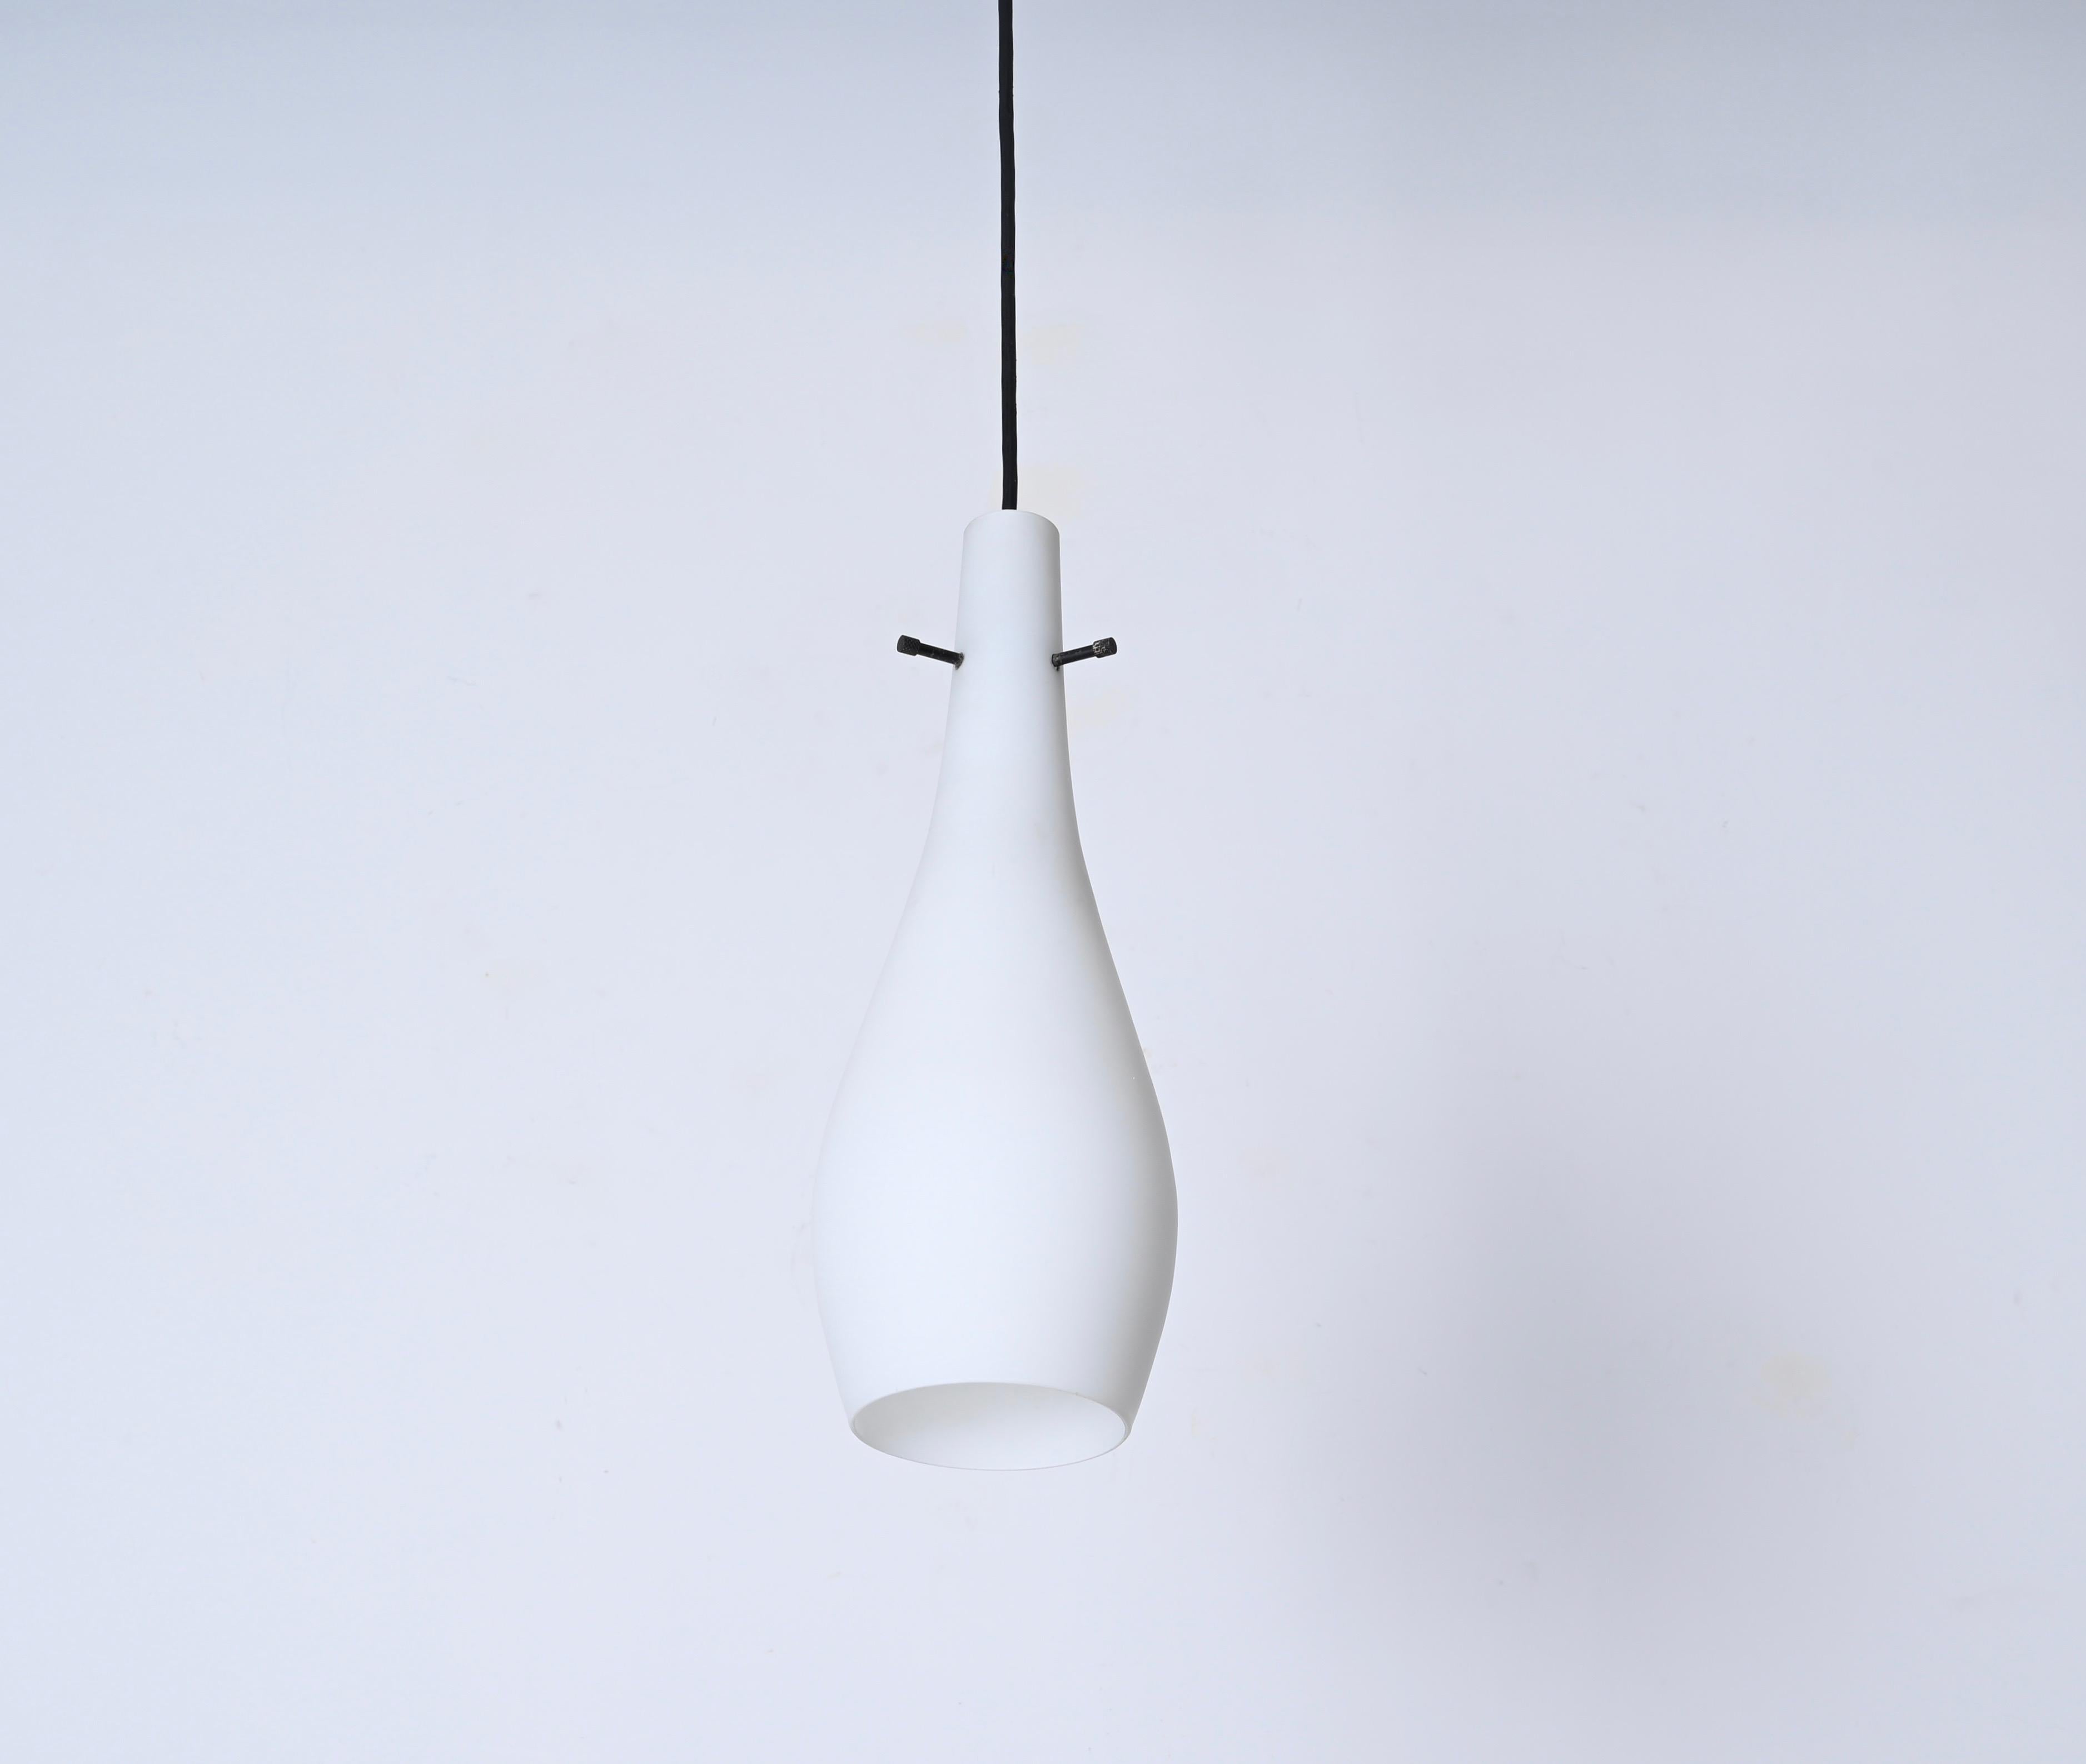 Metal Stilnovo Opaline Glass Pendant Lamp, Italian Lighting 1950s